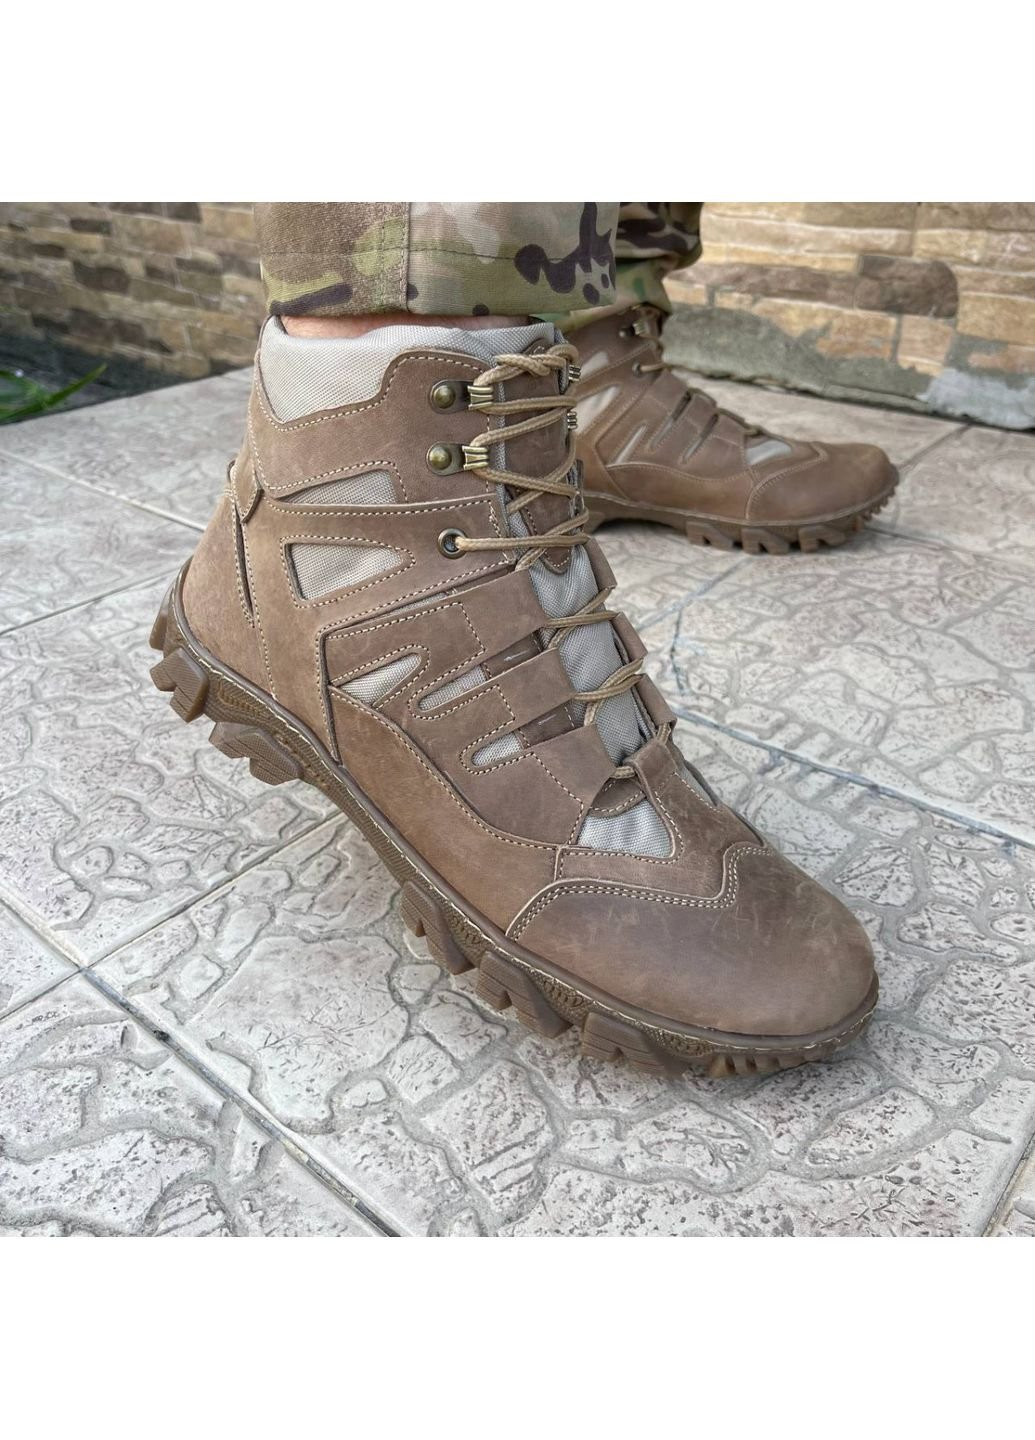 Коричневые осенние ботинки военные тактические всу (зсу) 7526 41 р 26,5 см коричневые KNF